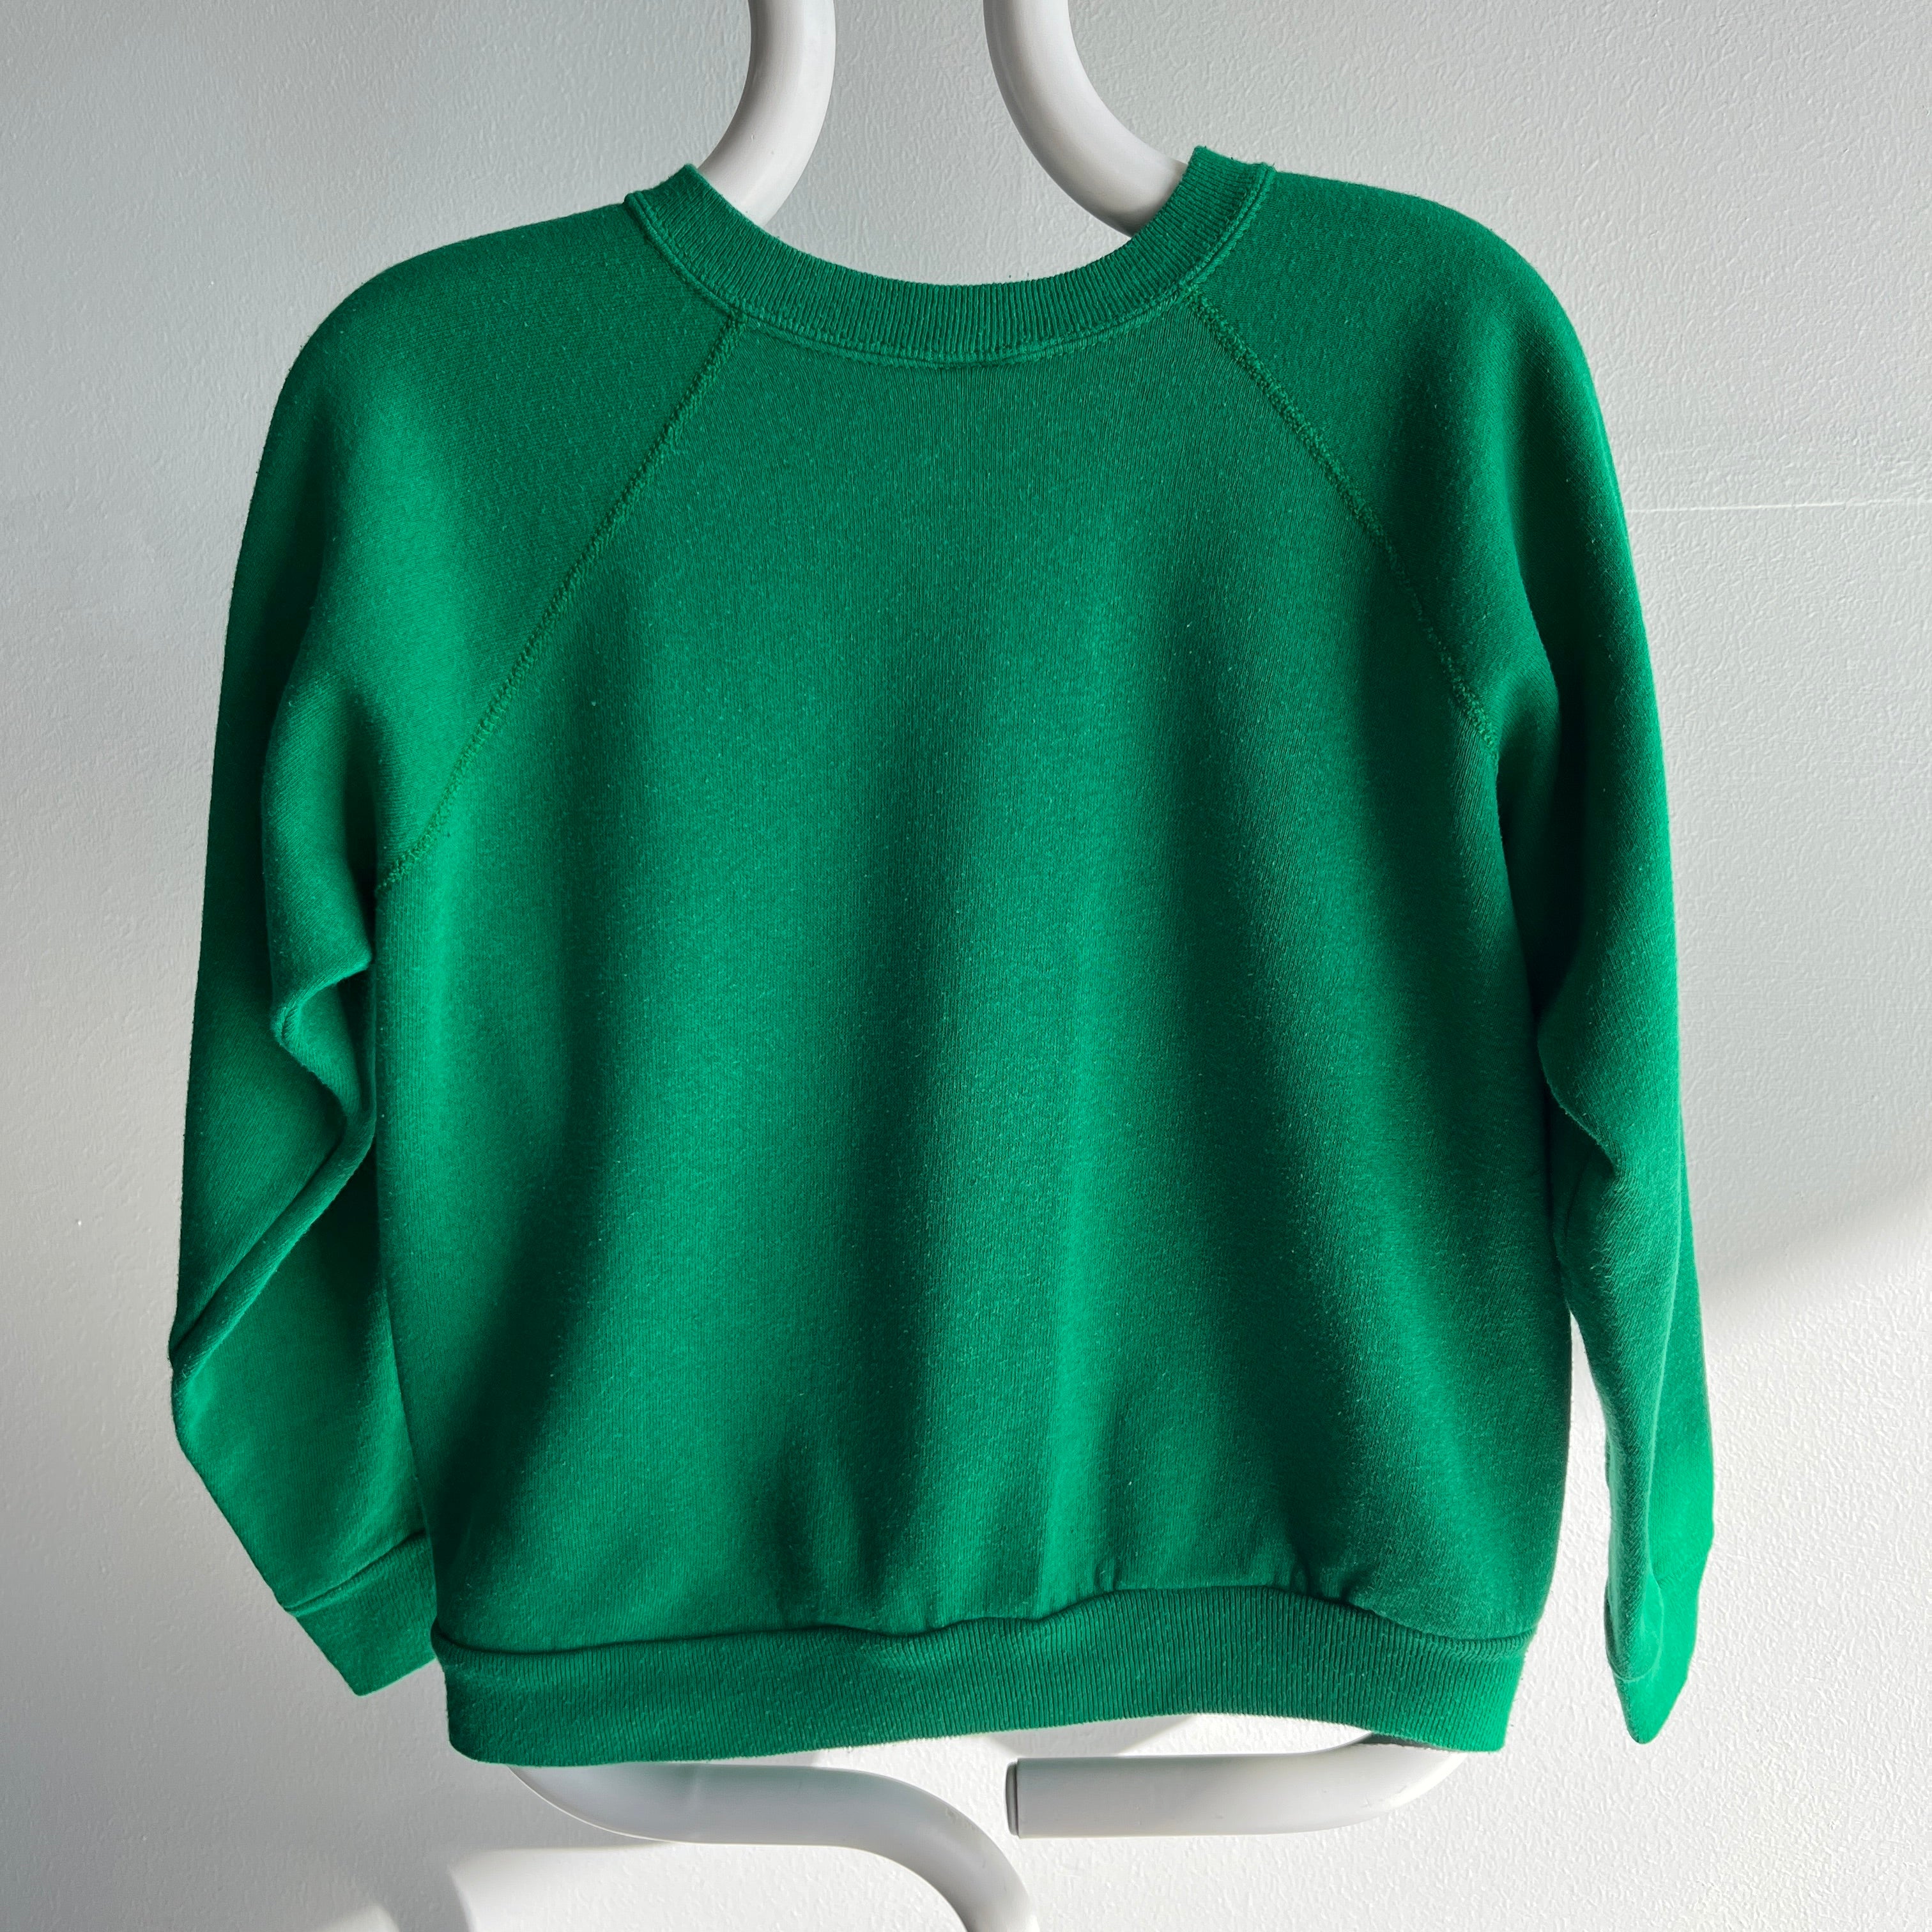 1980s Sweet Smaller Kelly Green Sweatshirt by Tultex